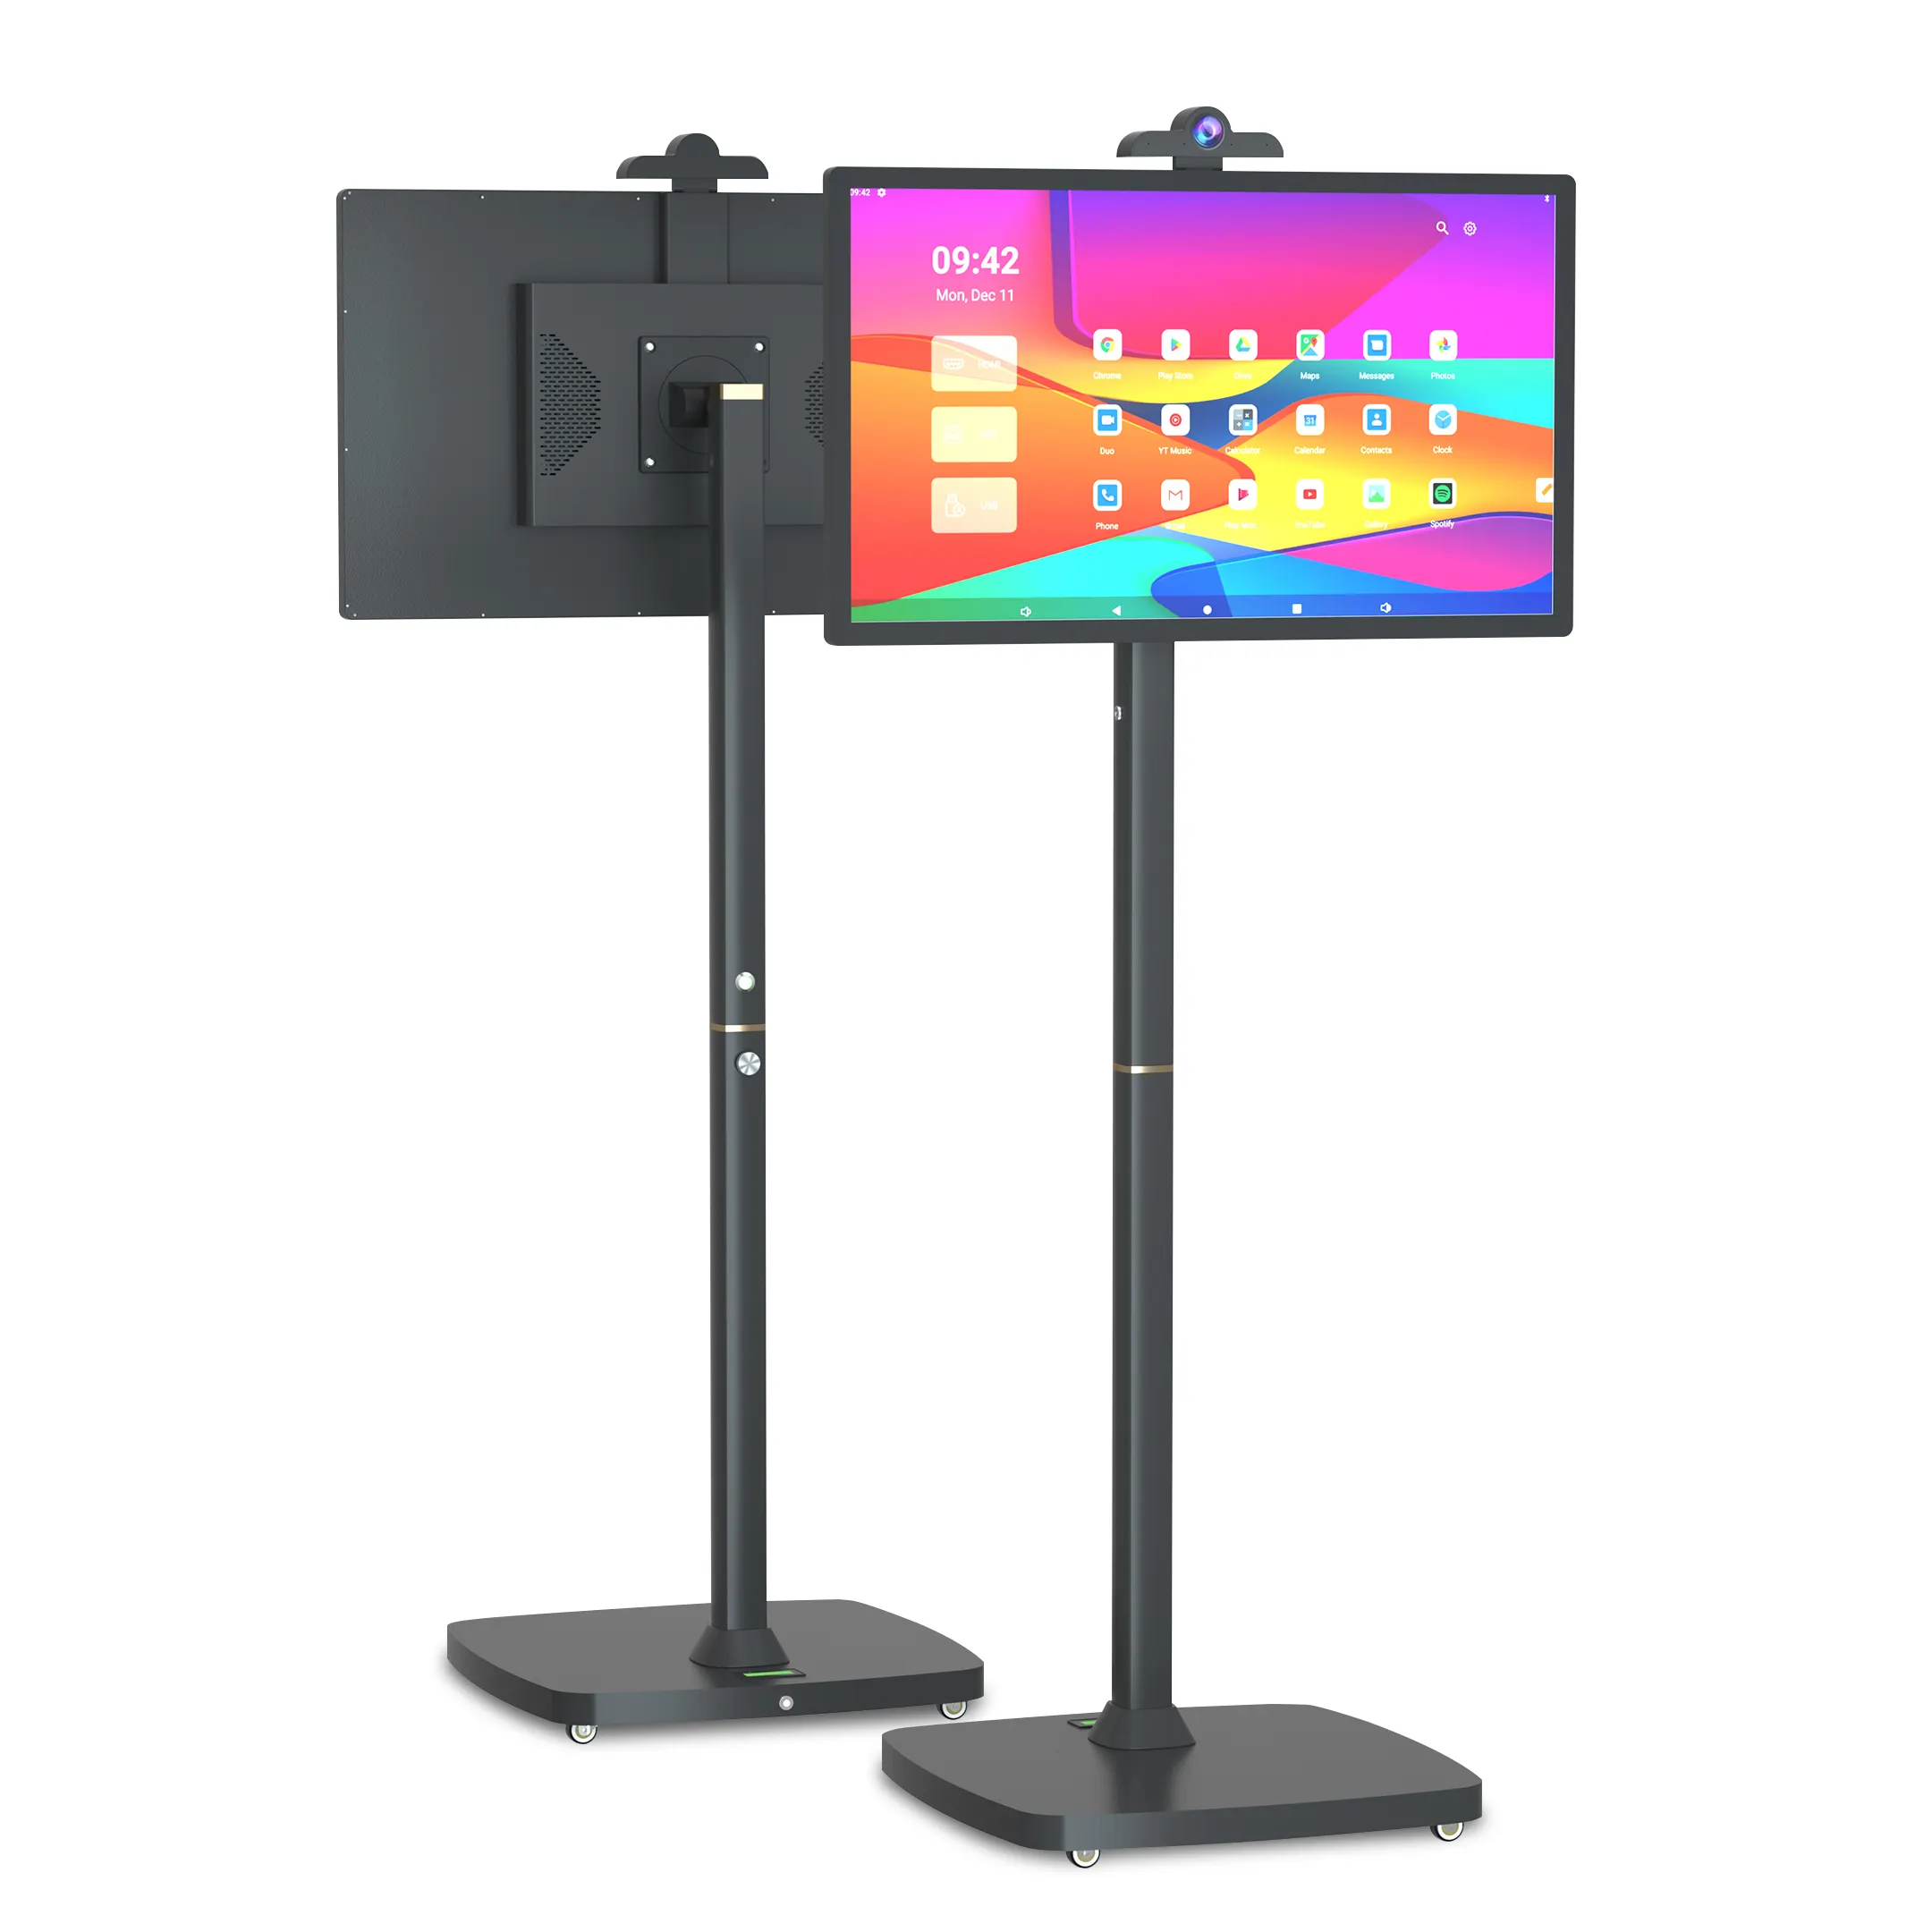 하이 퀄리티 베스트 셀러 대기 모드 안드로이드 12 높이 조절 가능한 스마트 TV 방송 스트리밍 휴대용 움직이는 TV 화면